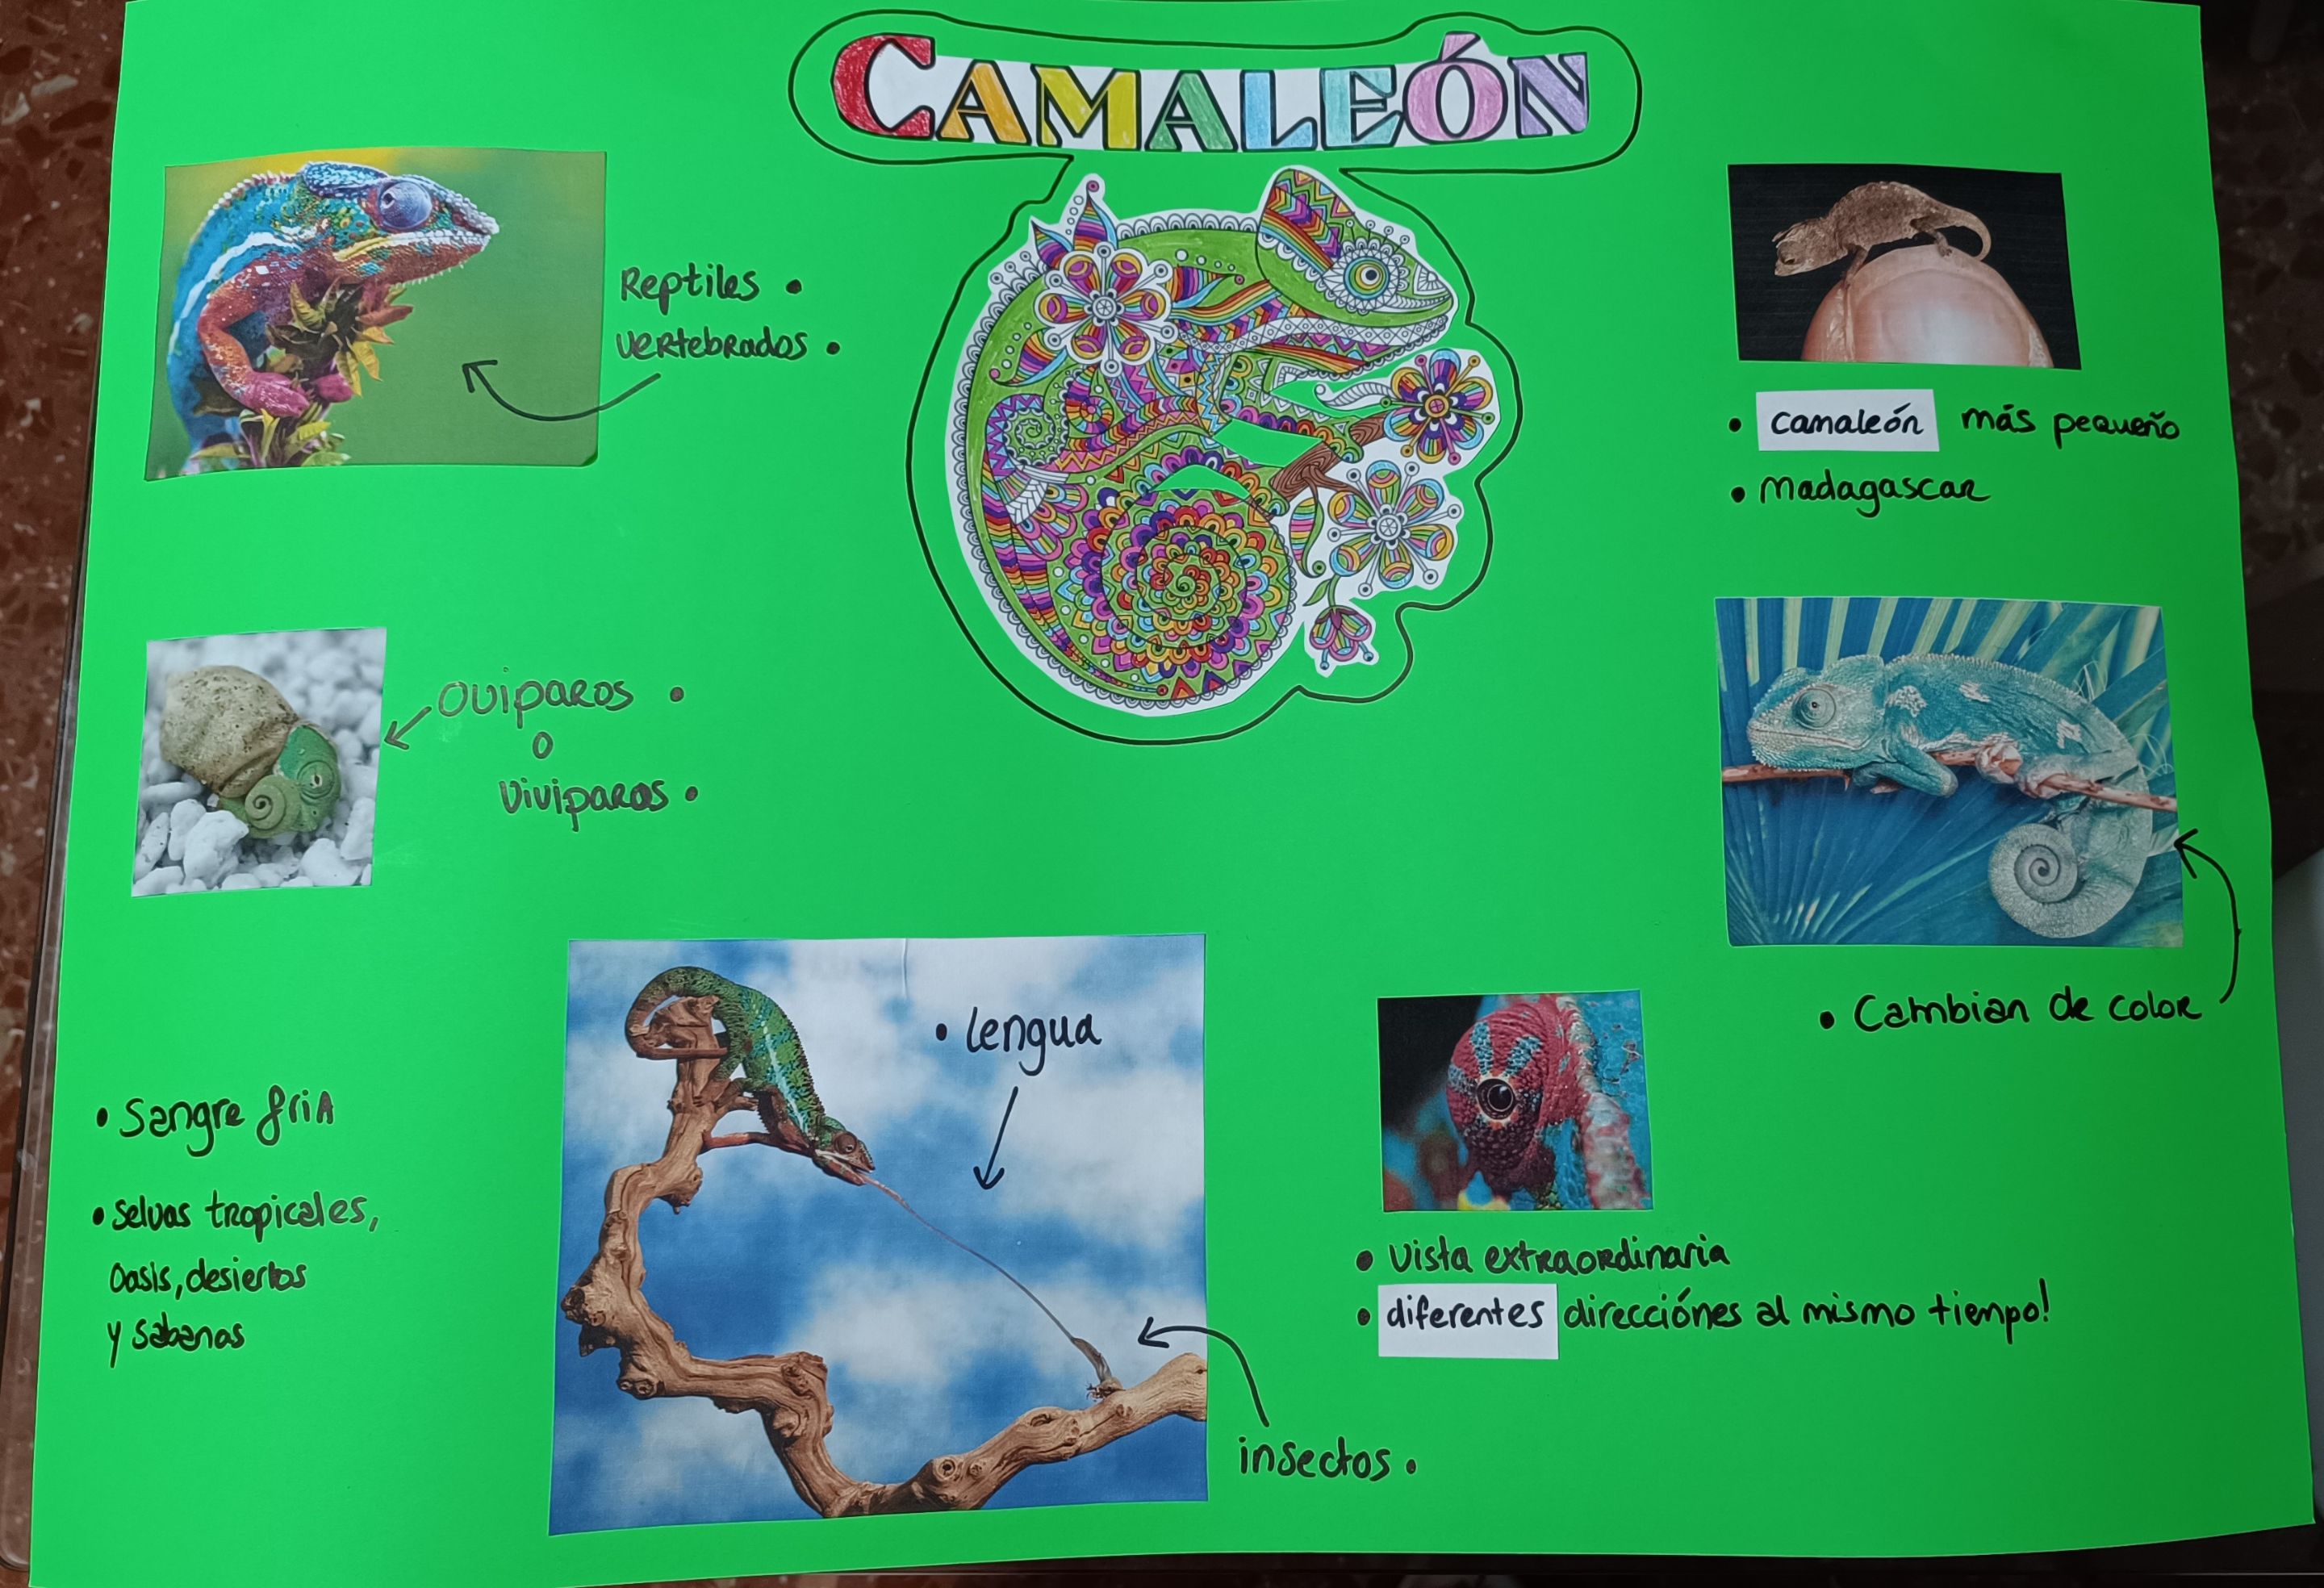 Chameleon presentation (1).jpg